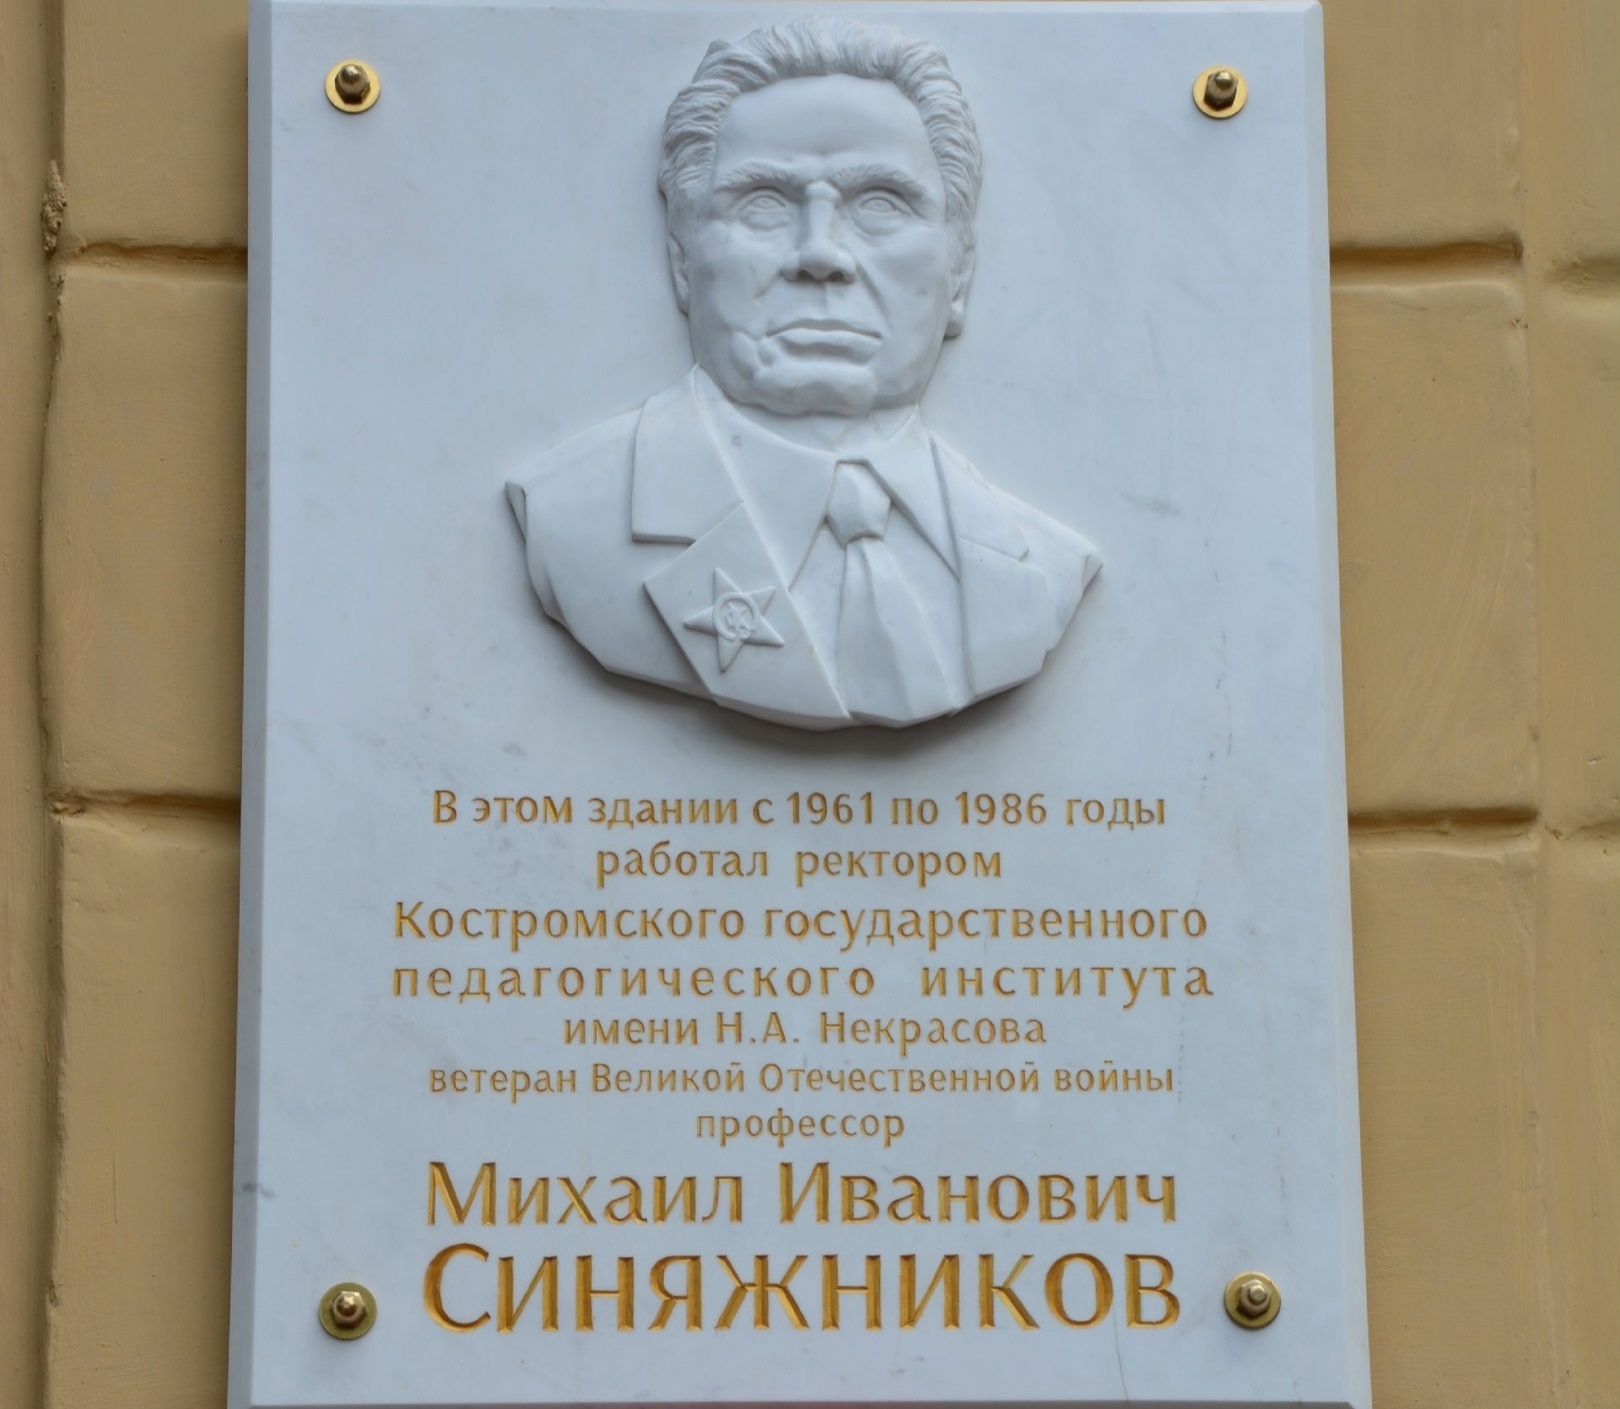 В КГУ открыли памятную доску в честь бывшего ректора Михаила Синяжникова